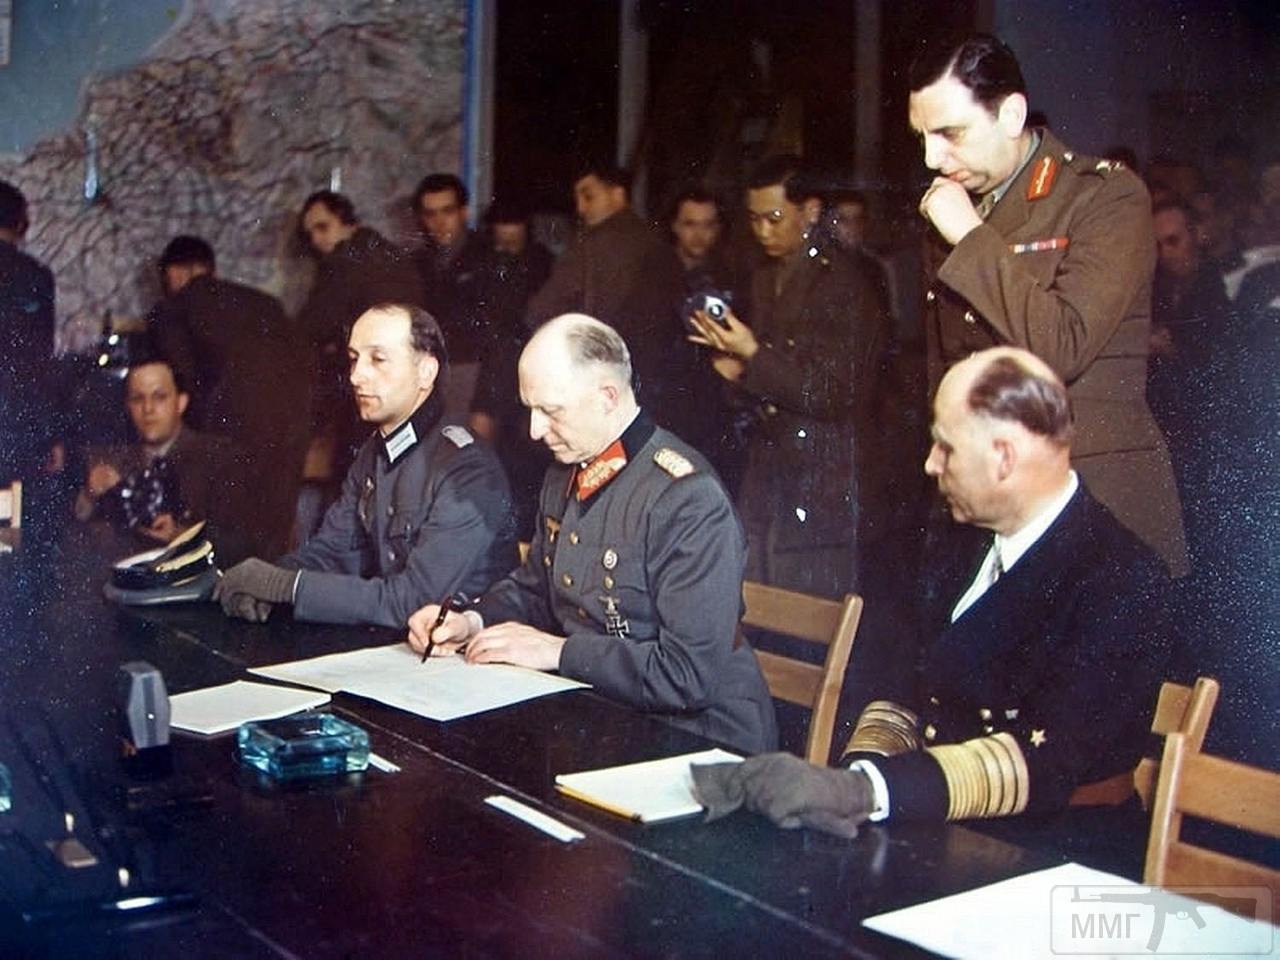 102933 - Генерал-полковник Альфред Йодль подписывает капитуляцию Германии в штаб-квартире союзных войск в Реймсе 7 мая 1945 года. Рядом с Йодлем сидят гросс-адмирал Ганс Георг фон Фридебург и адъютант Йодля майор Вильгельм Оксениус.